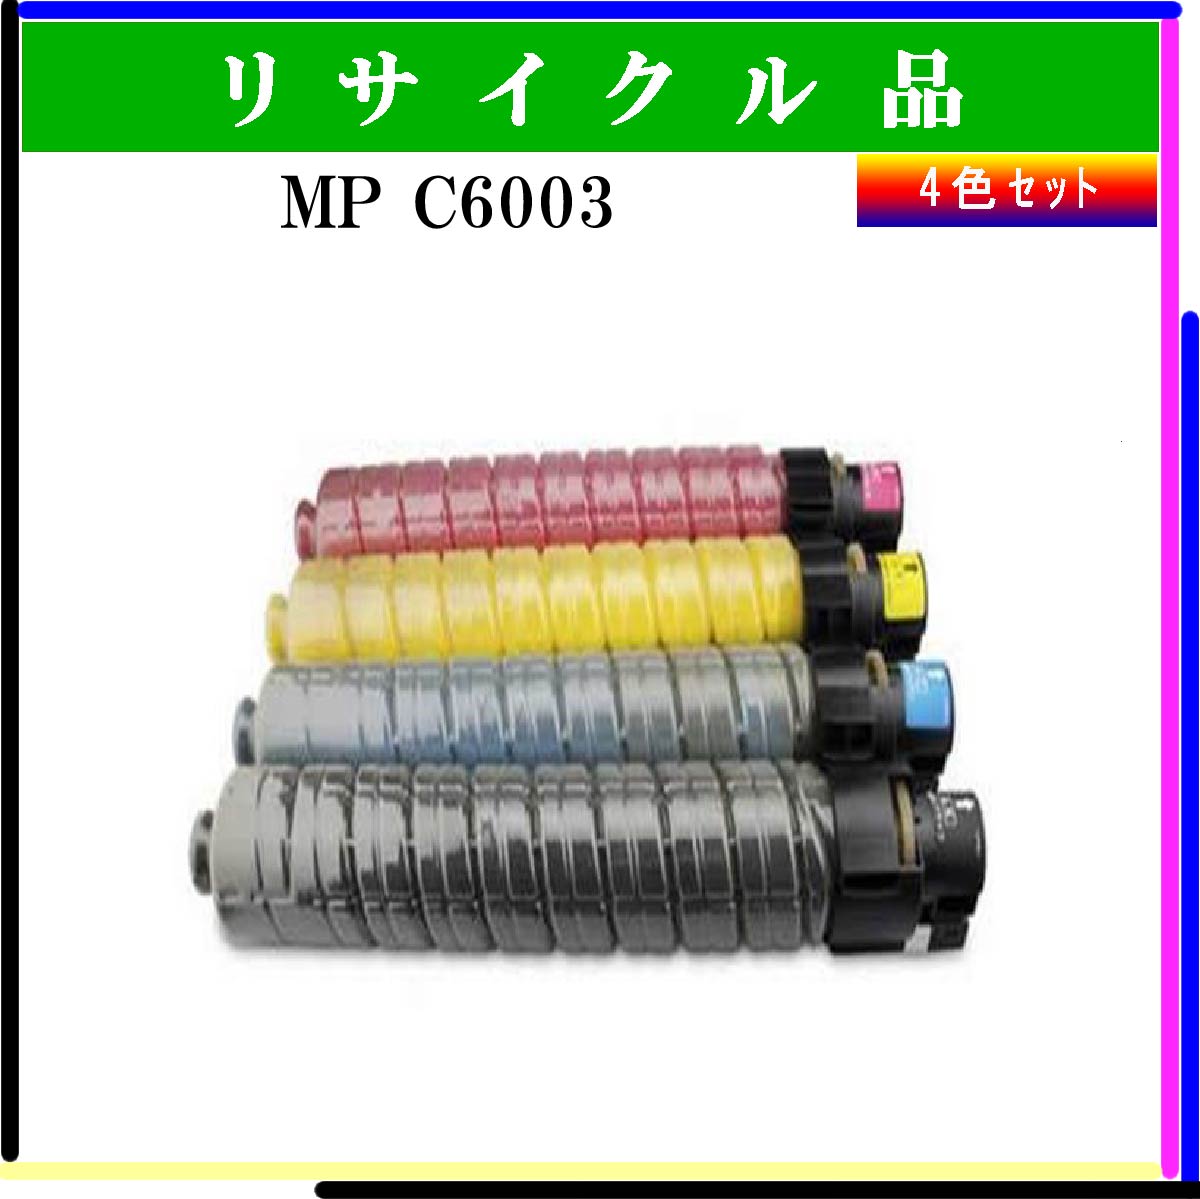 MP ﾄﾅｰ C6003 (4色ｾｯﾄ)